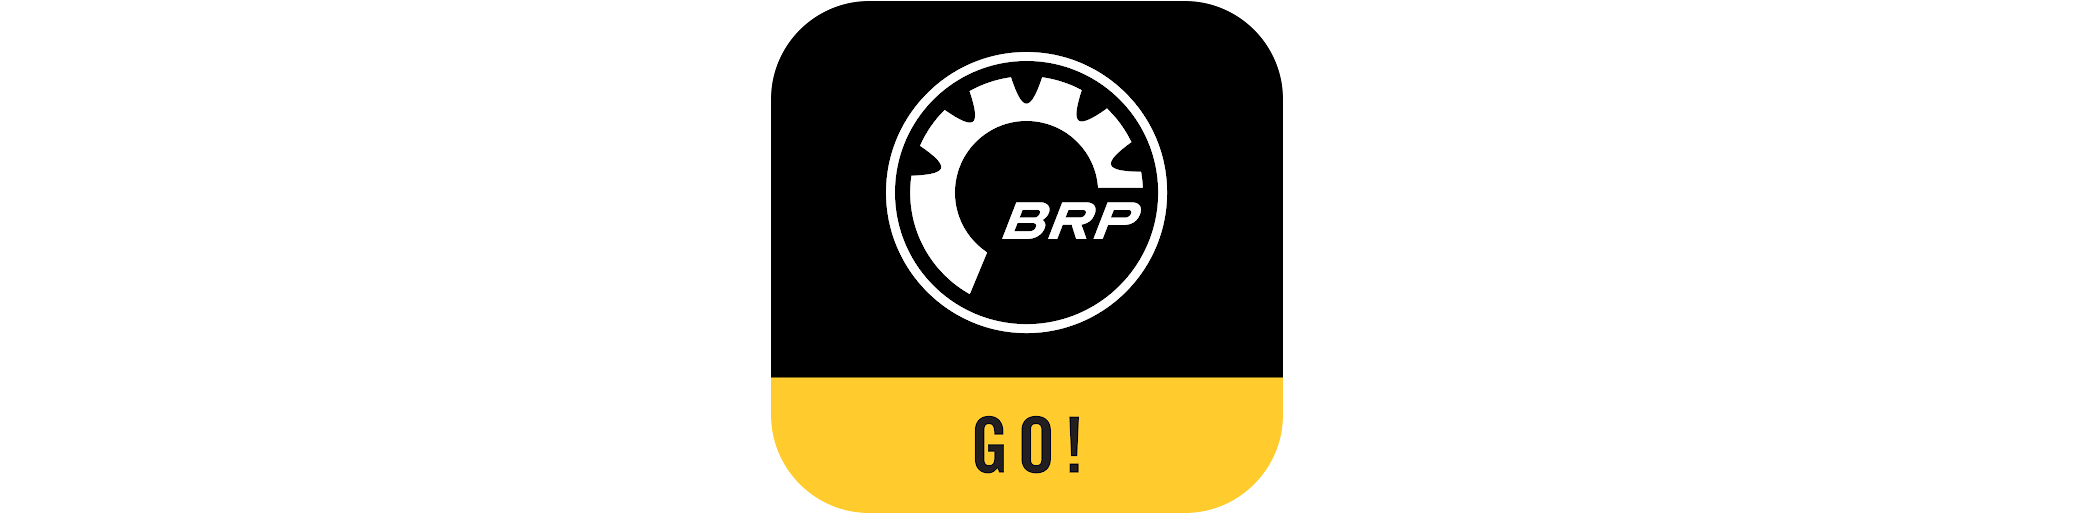 BRP GO! Sovelluksen logo